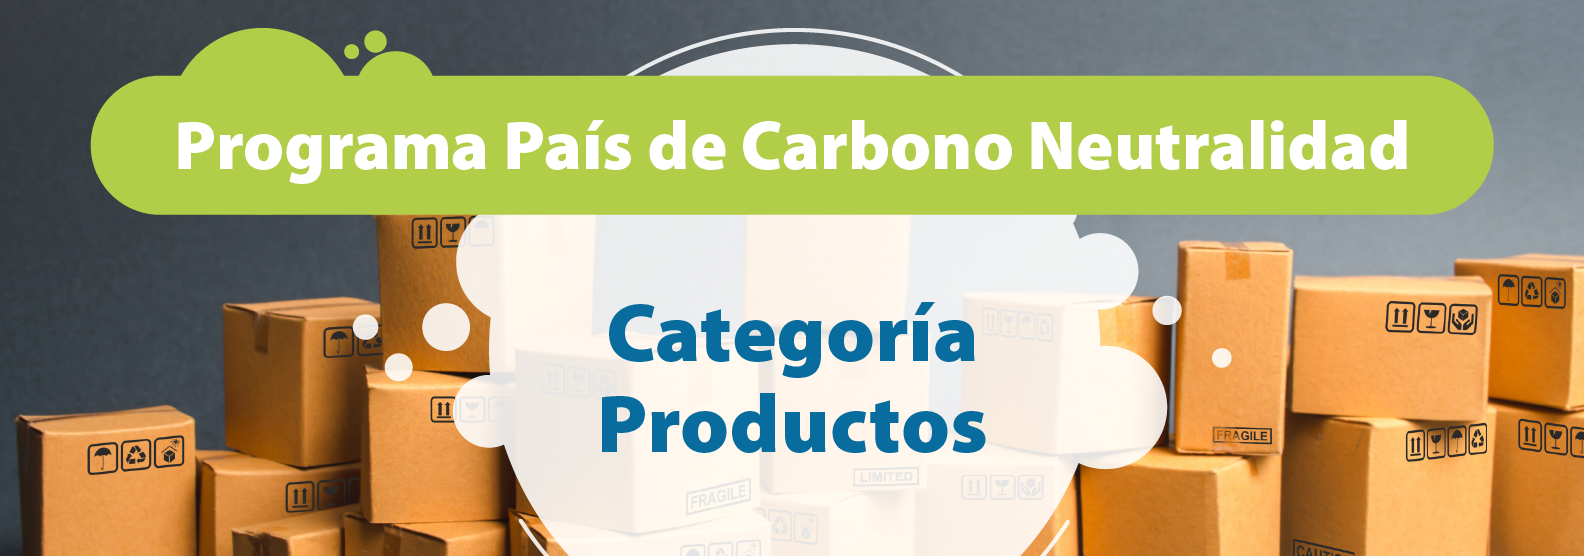 Programa País de Carbono Neutralidad, Categoría Productos